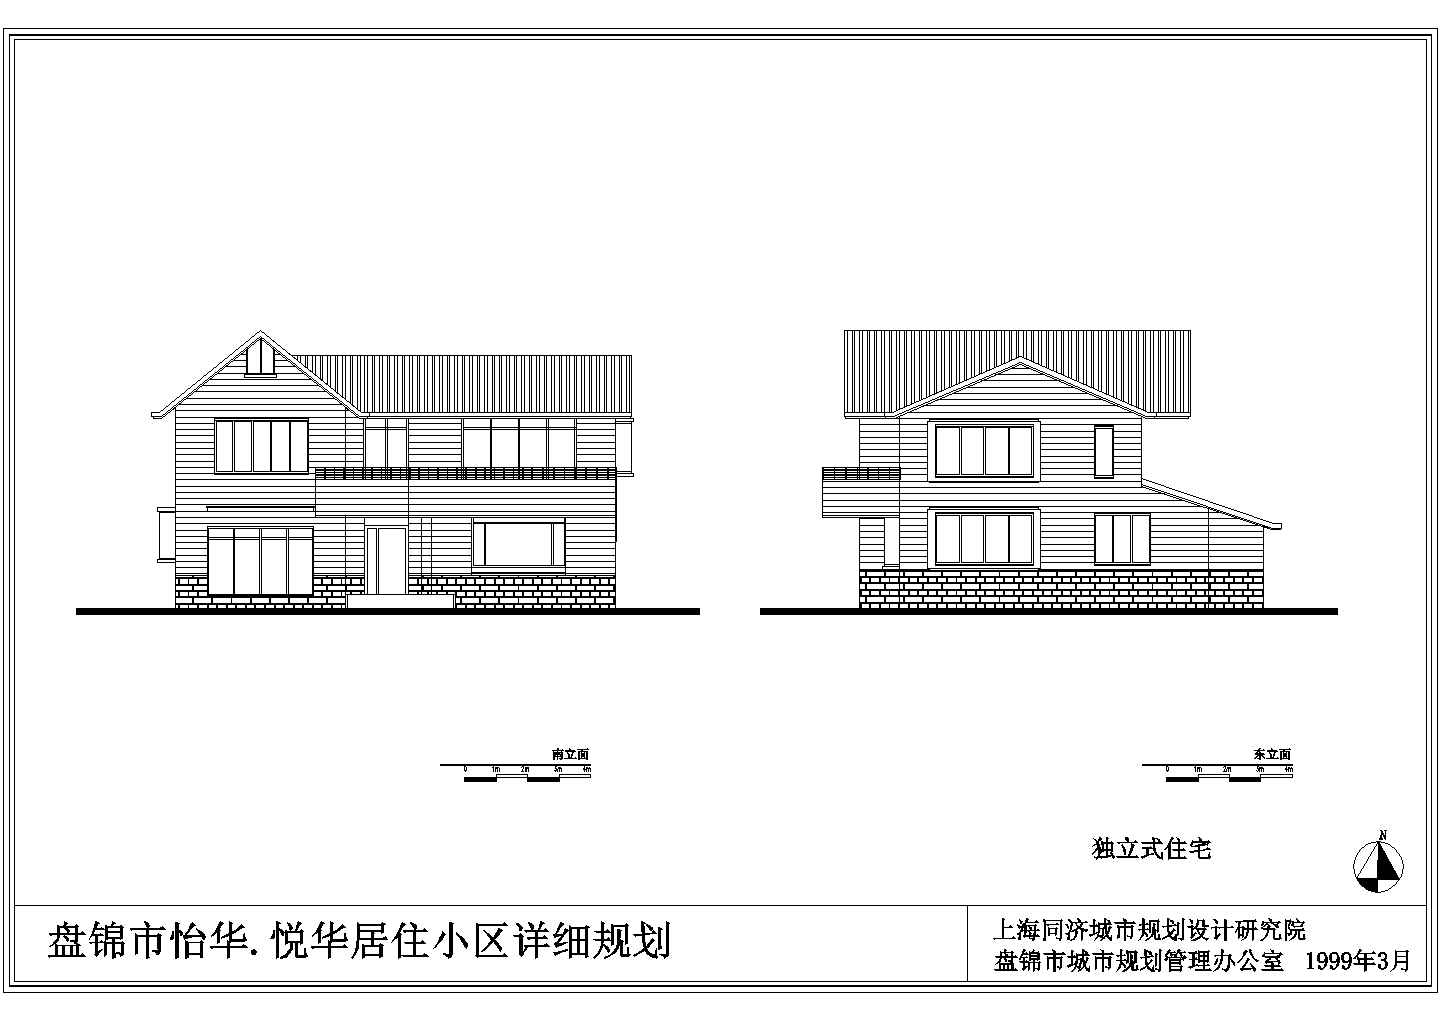 福州居民住宅A房型详细建筑施工图